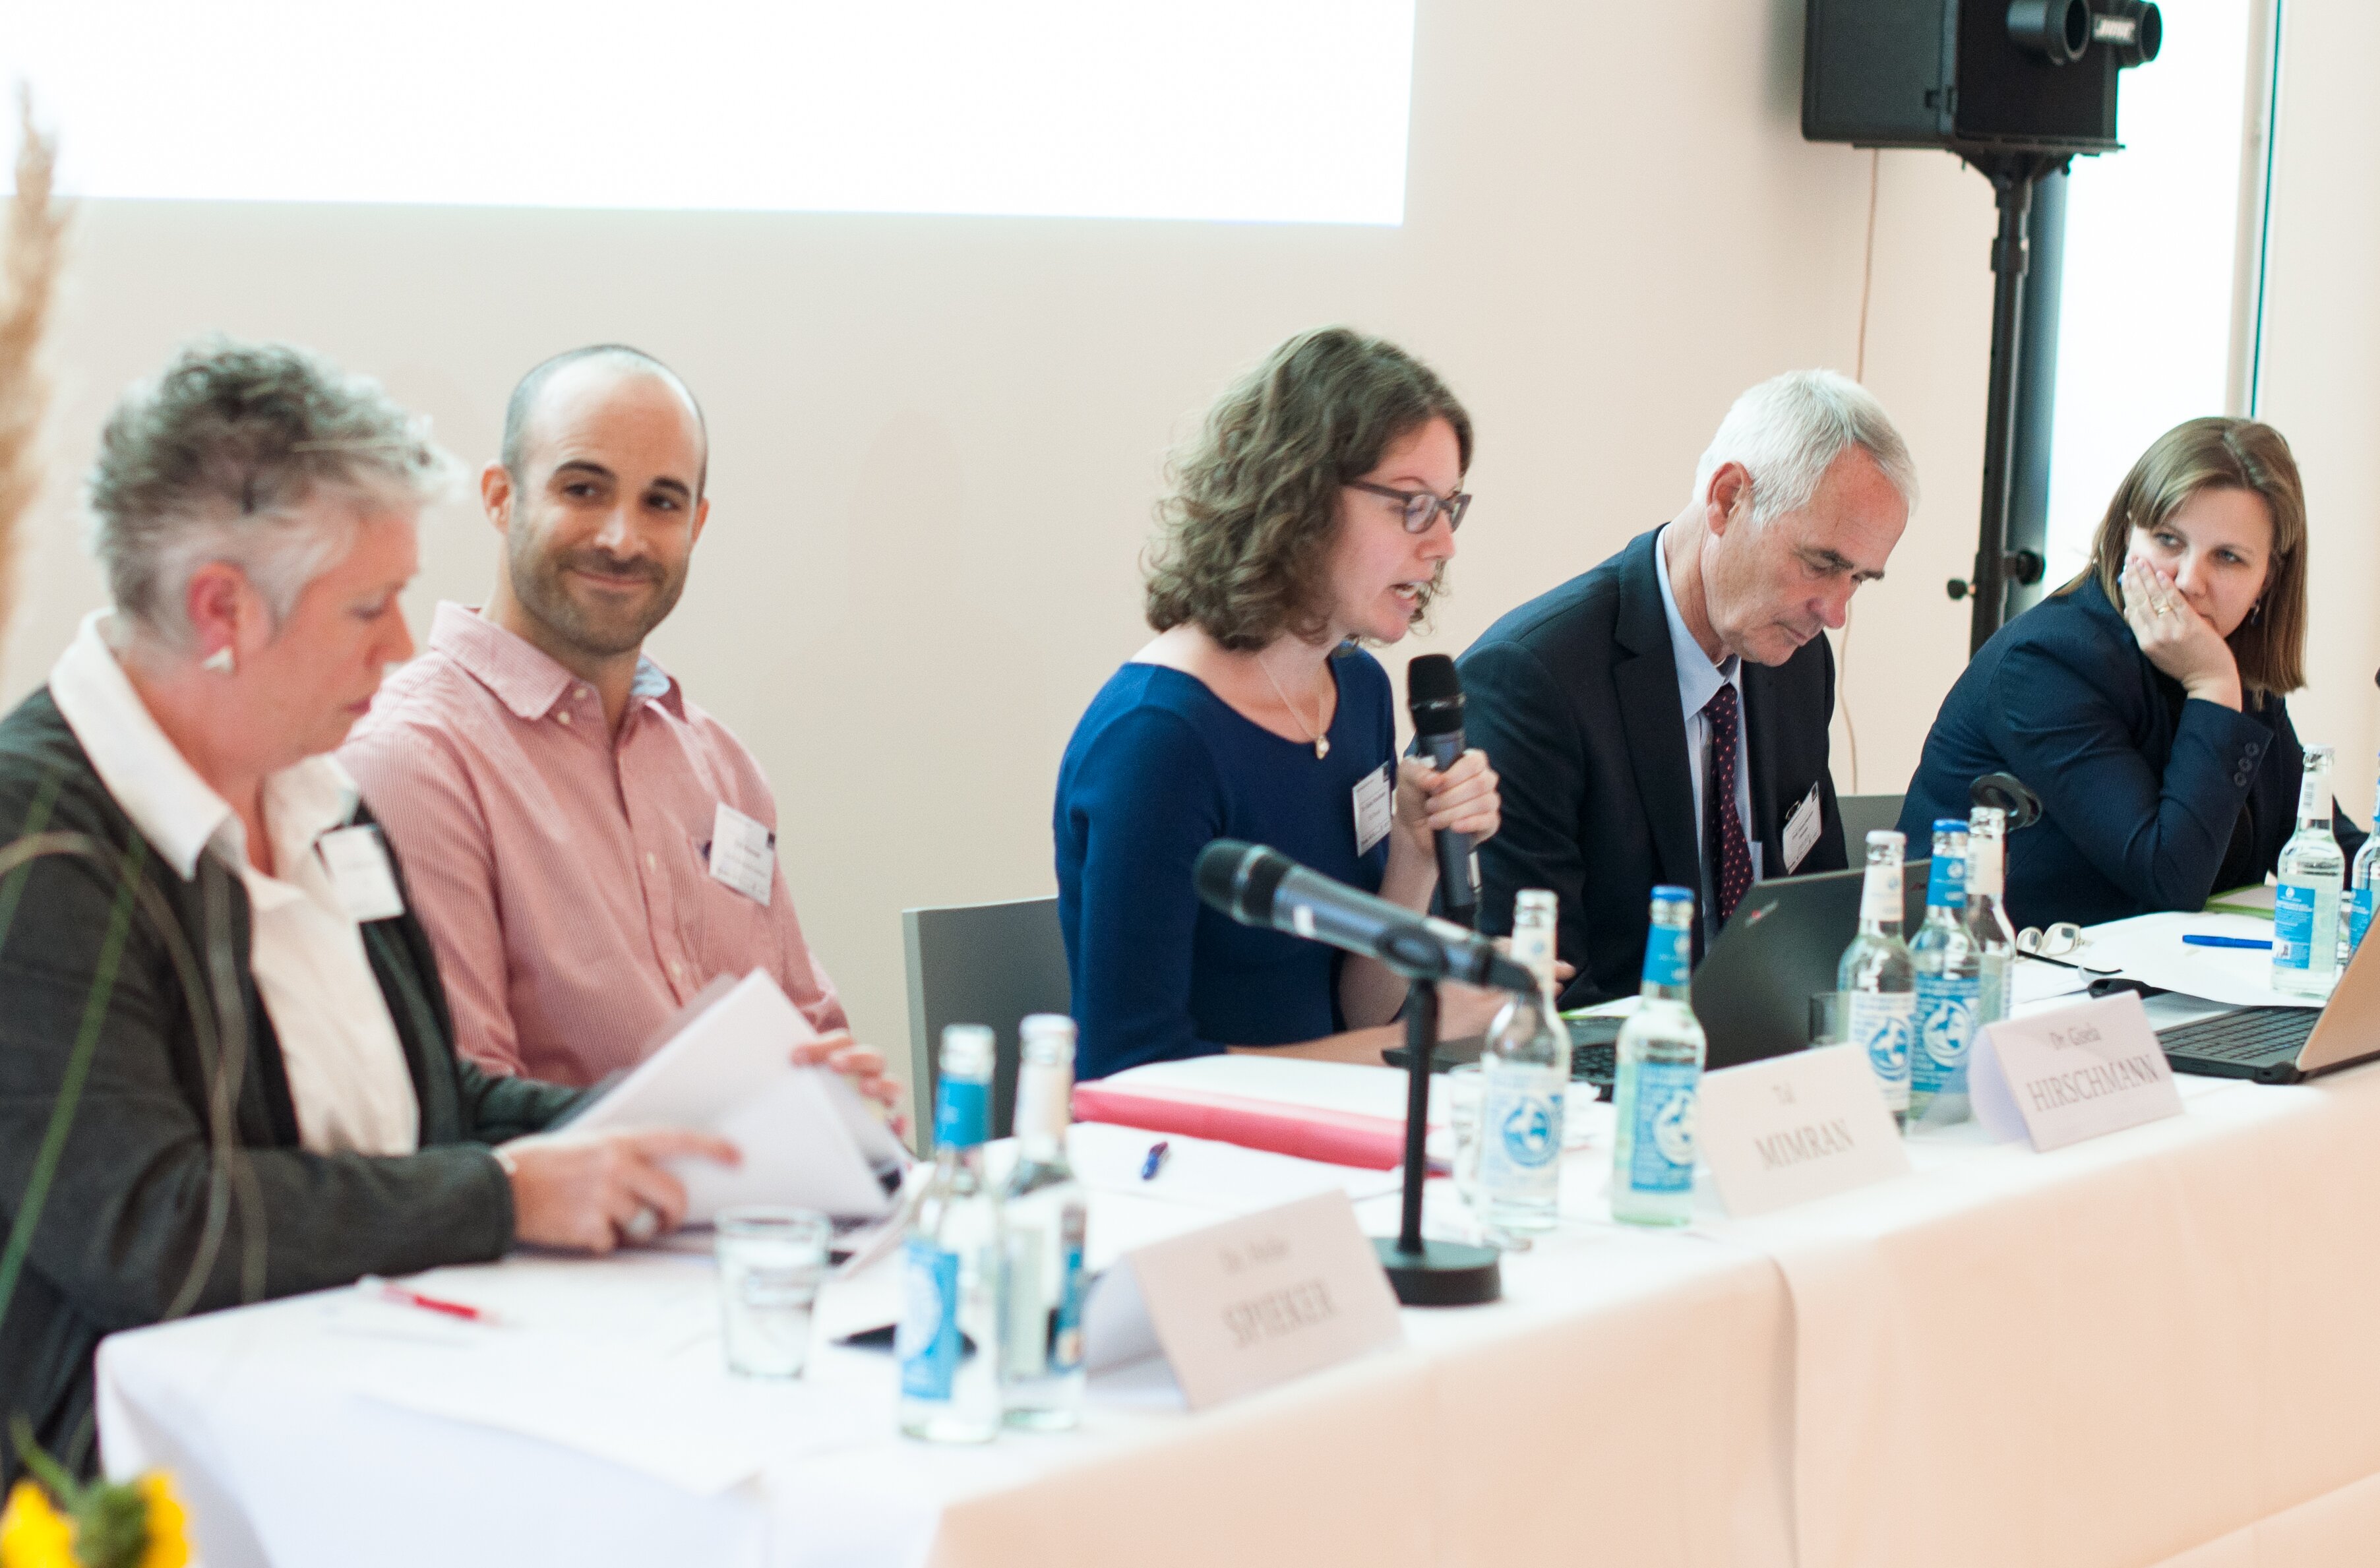 Dr. Patrycja Grzebyk on the conference âProtecting the Unprotectedâ in Bochum 2